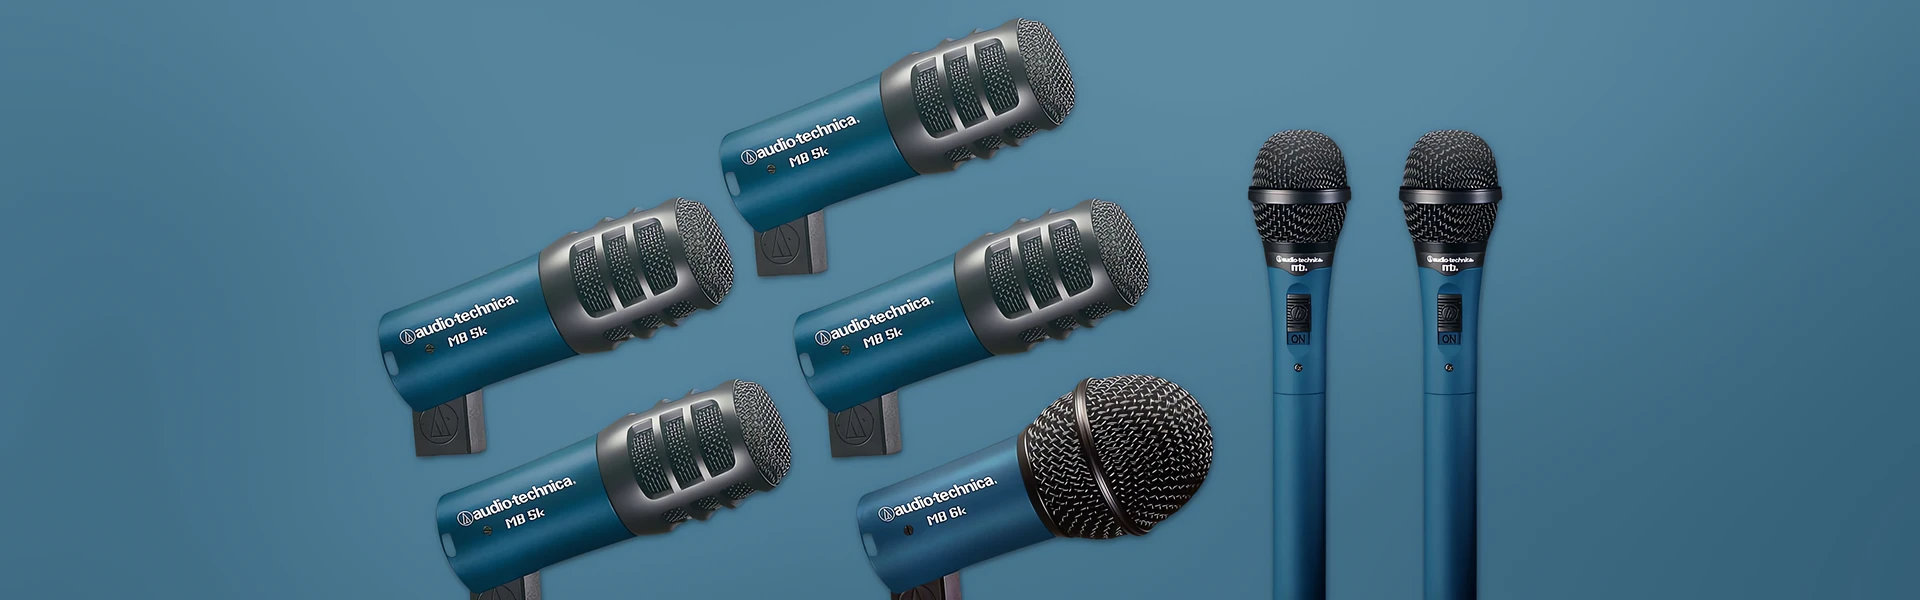 Test mikrofonów instrumentalnych Audio-Technica MB/DK7